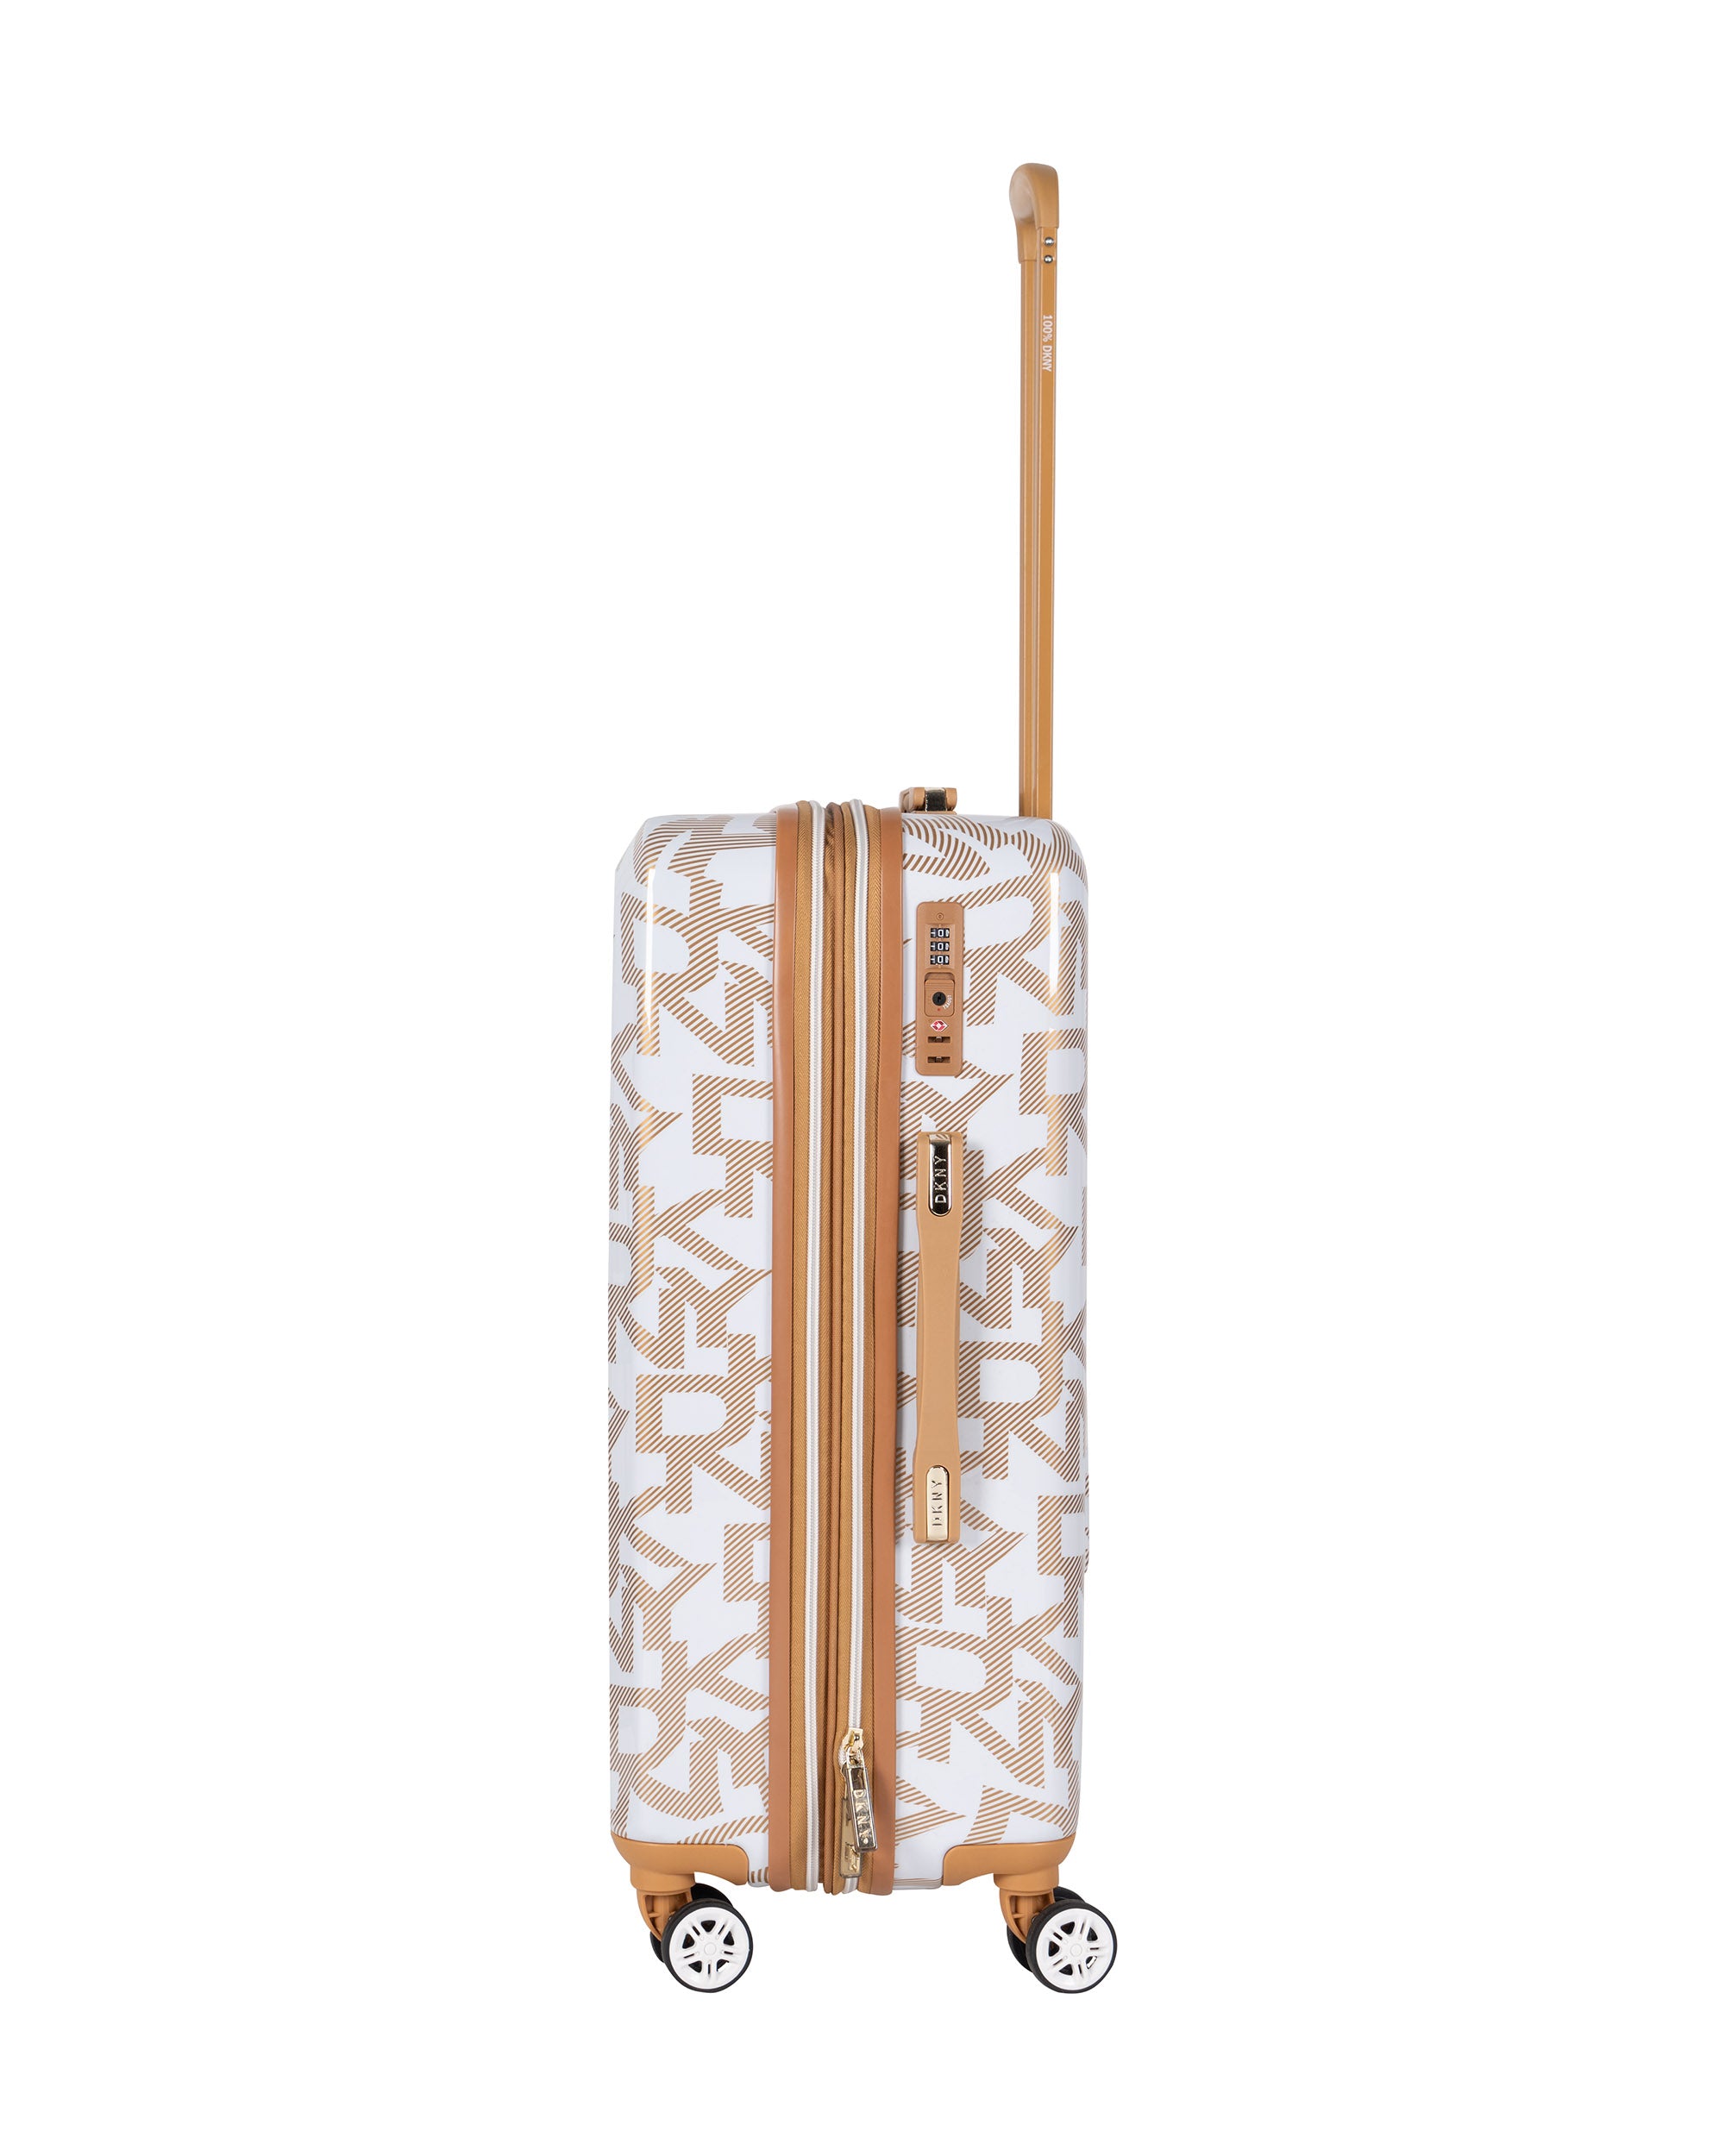 DKNY حقيبة سفر بيضاء متوسطة الحجم